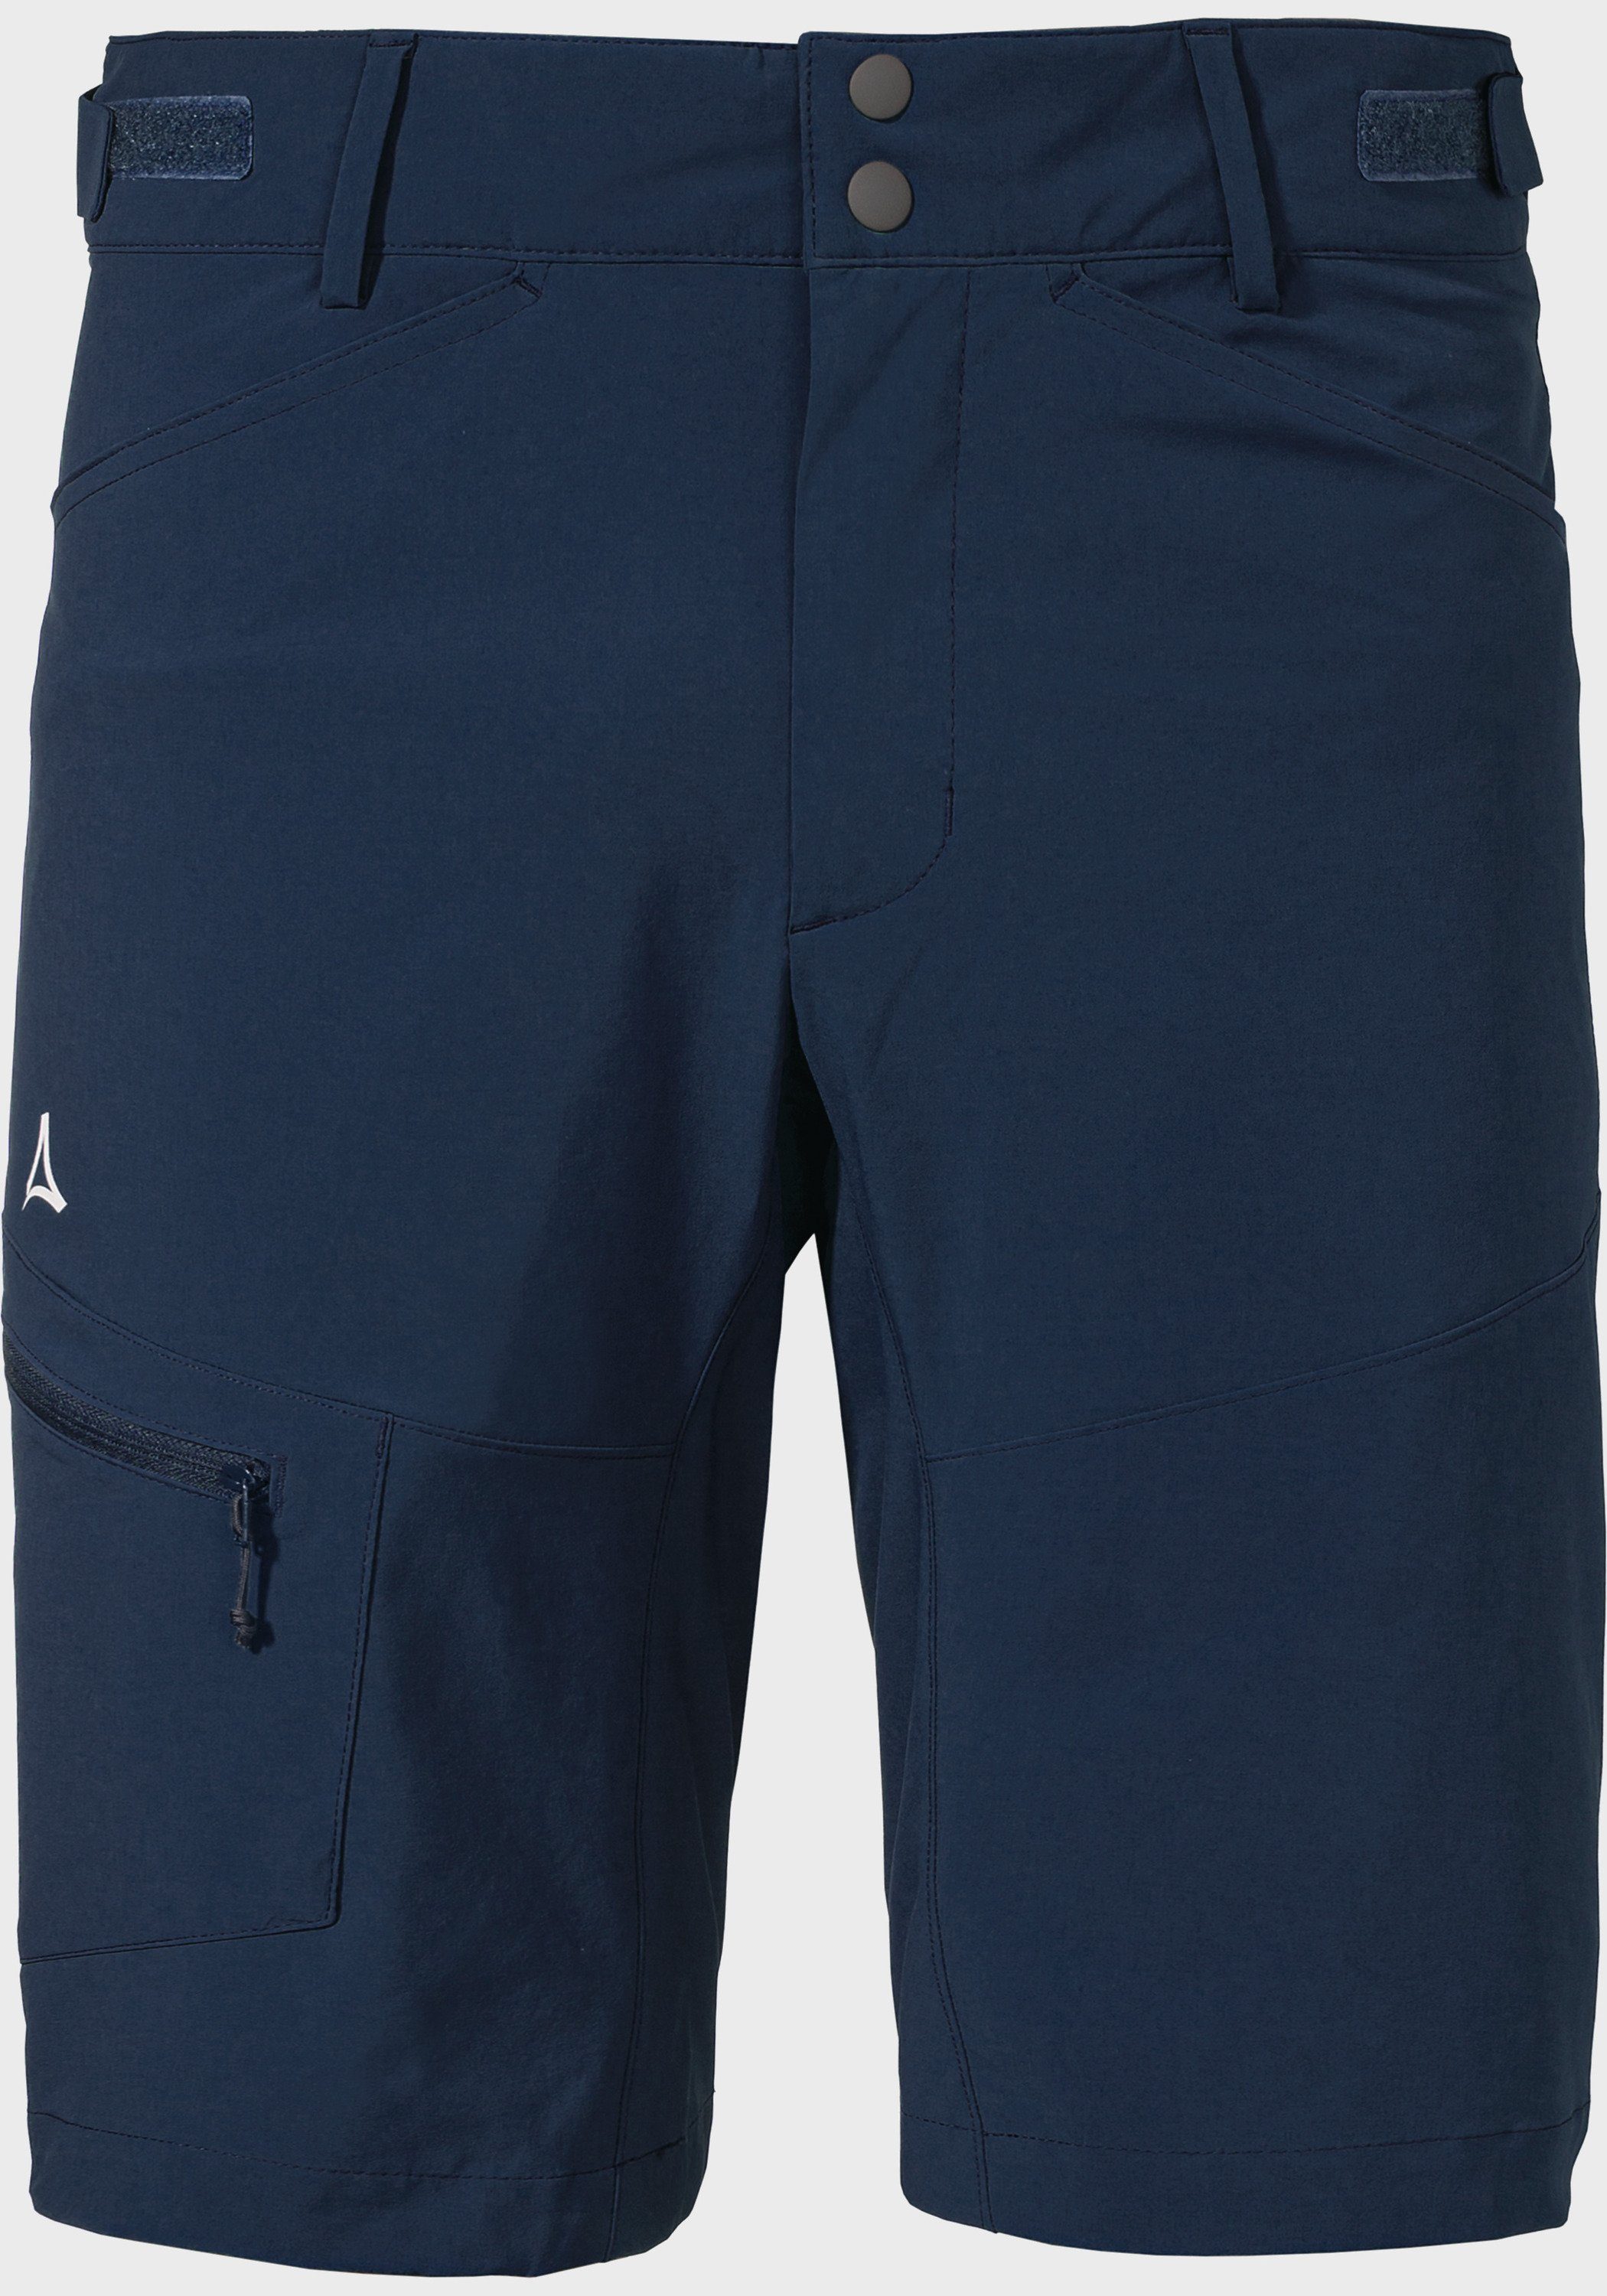 Schöffel Shorts Shorts Algarve M blau